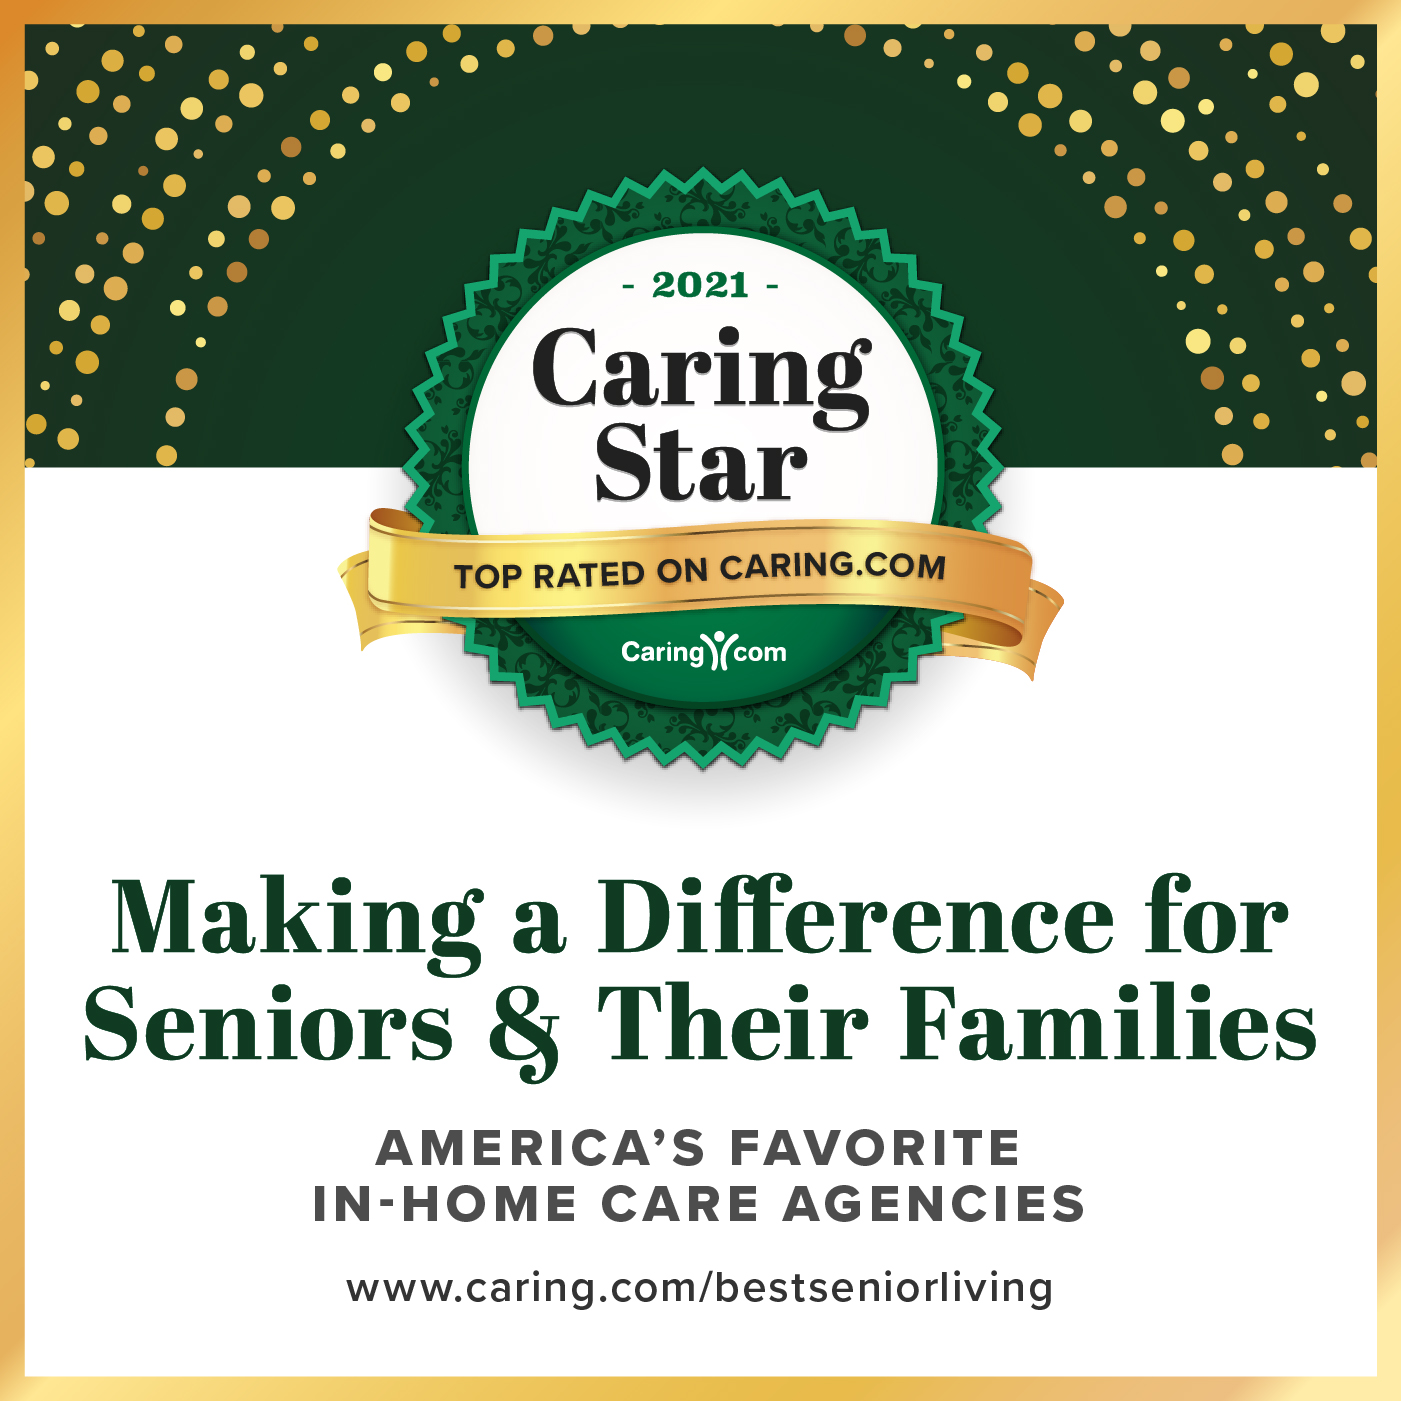 Caring Star Award